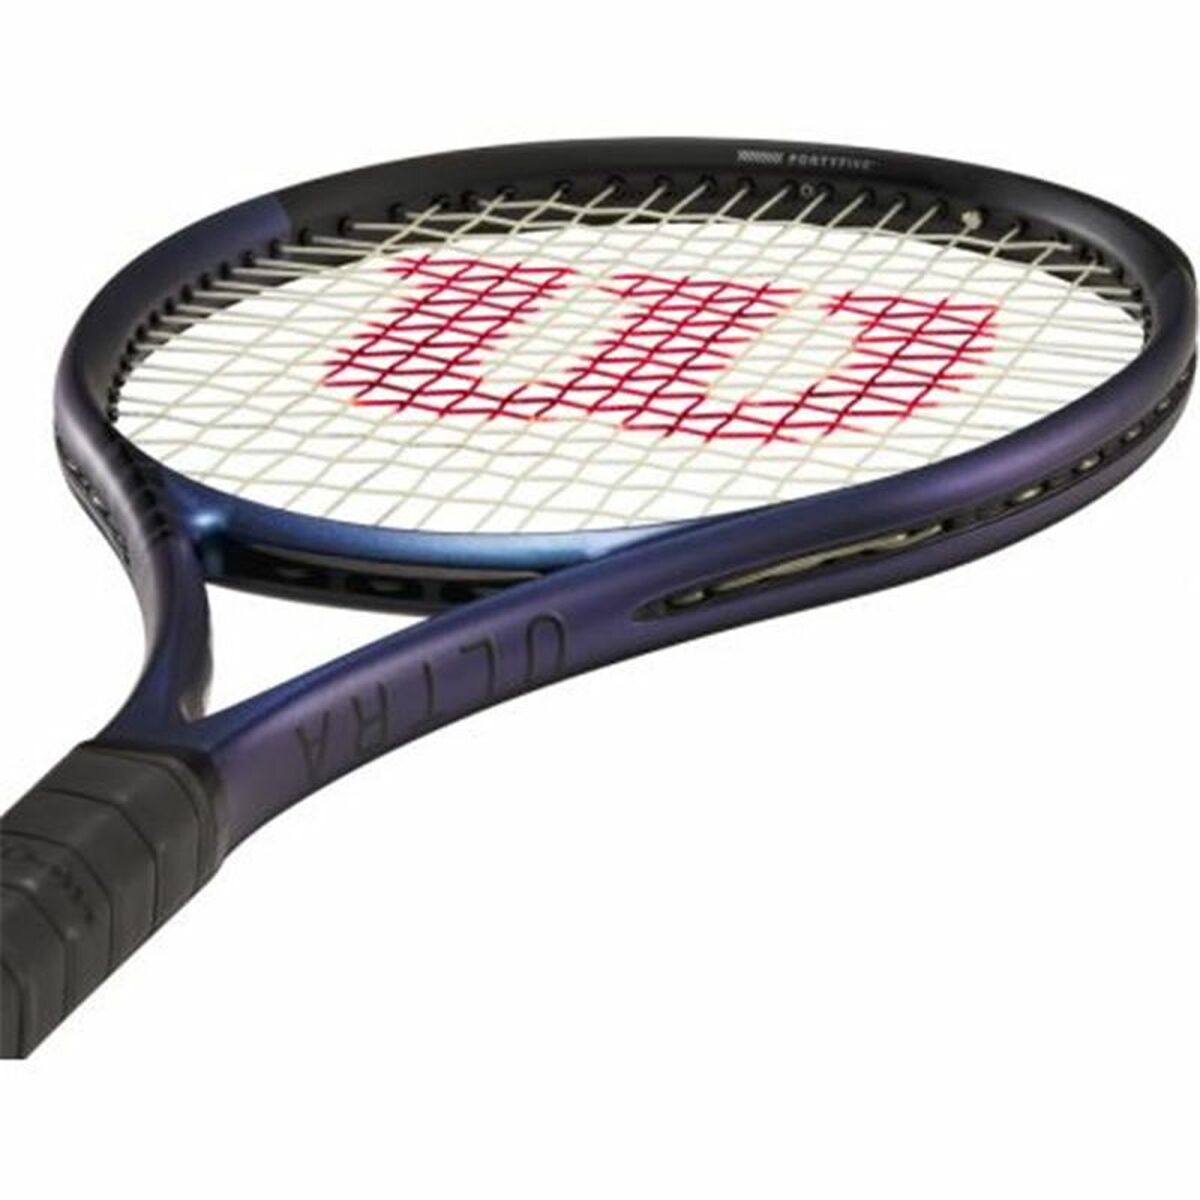 Теннисная ракетка Wilson Ultra 100UL V4 Синий